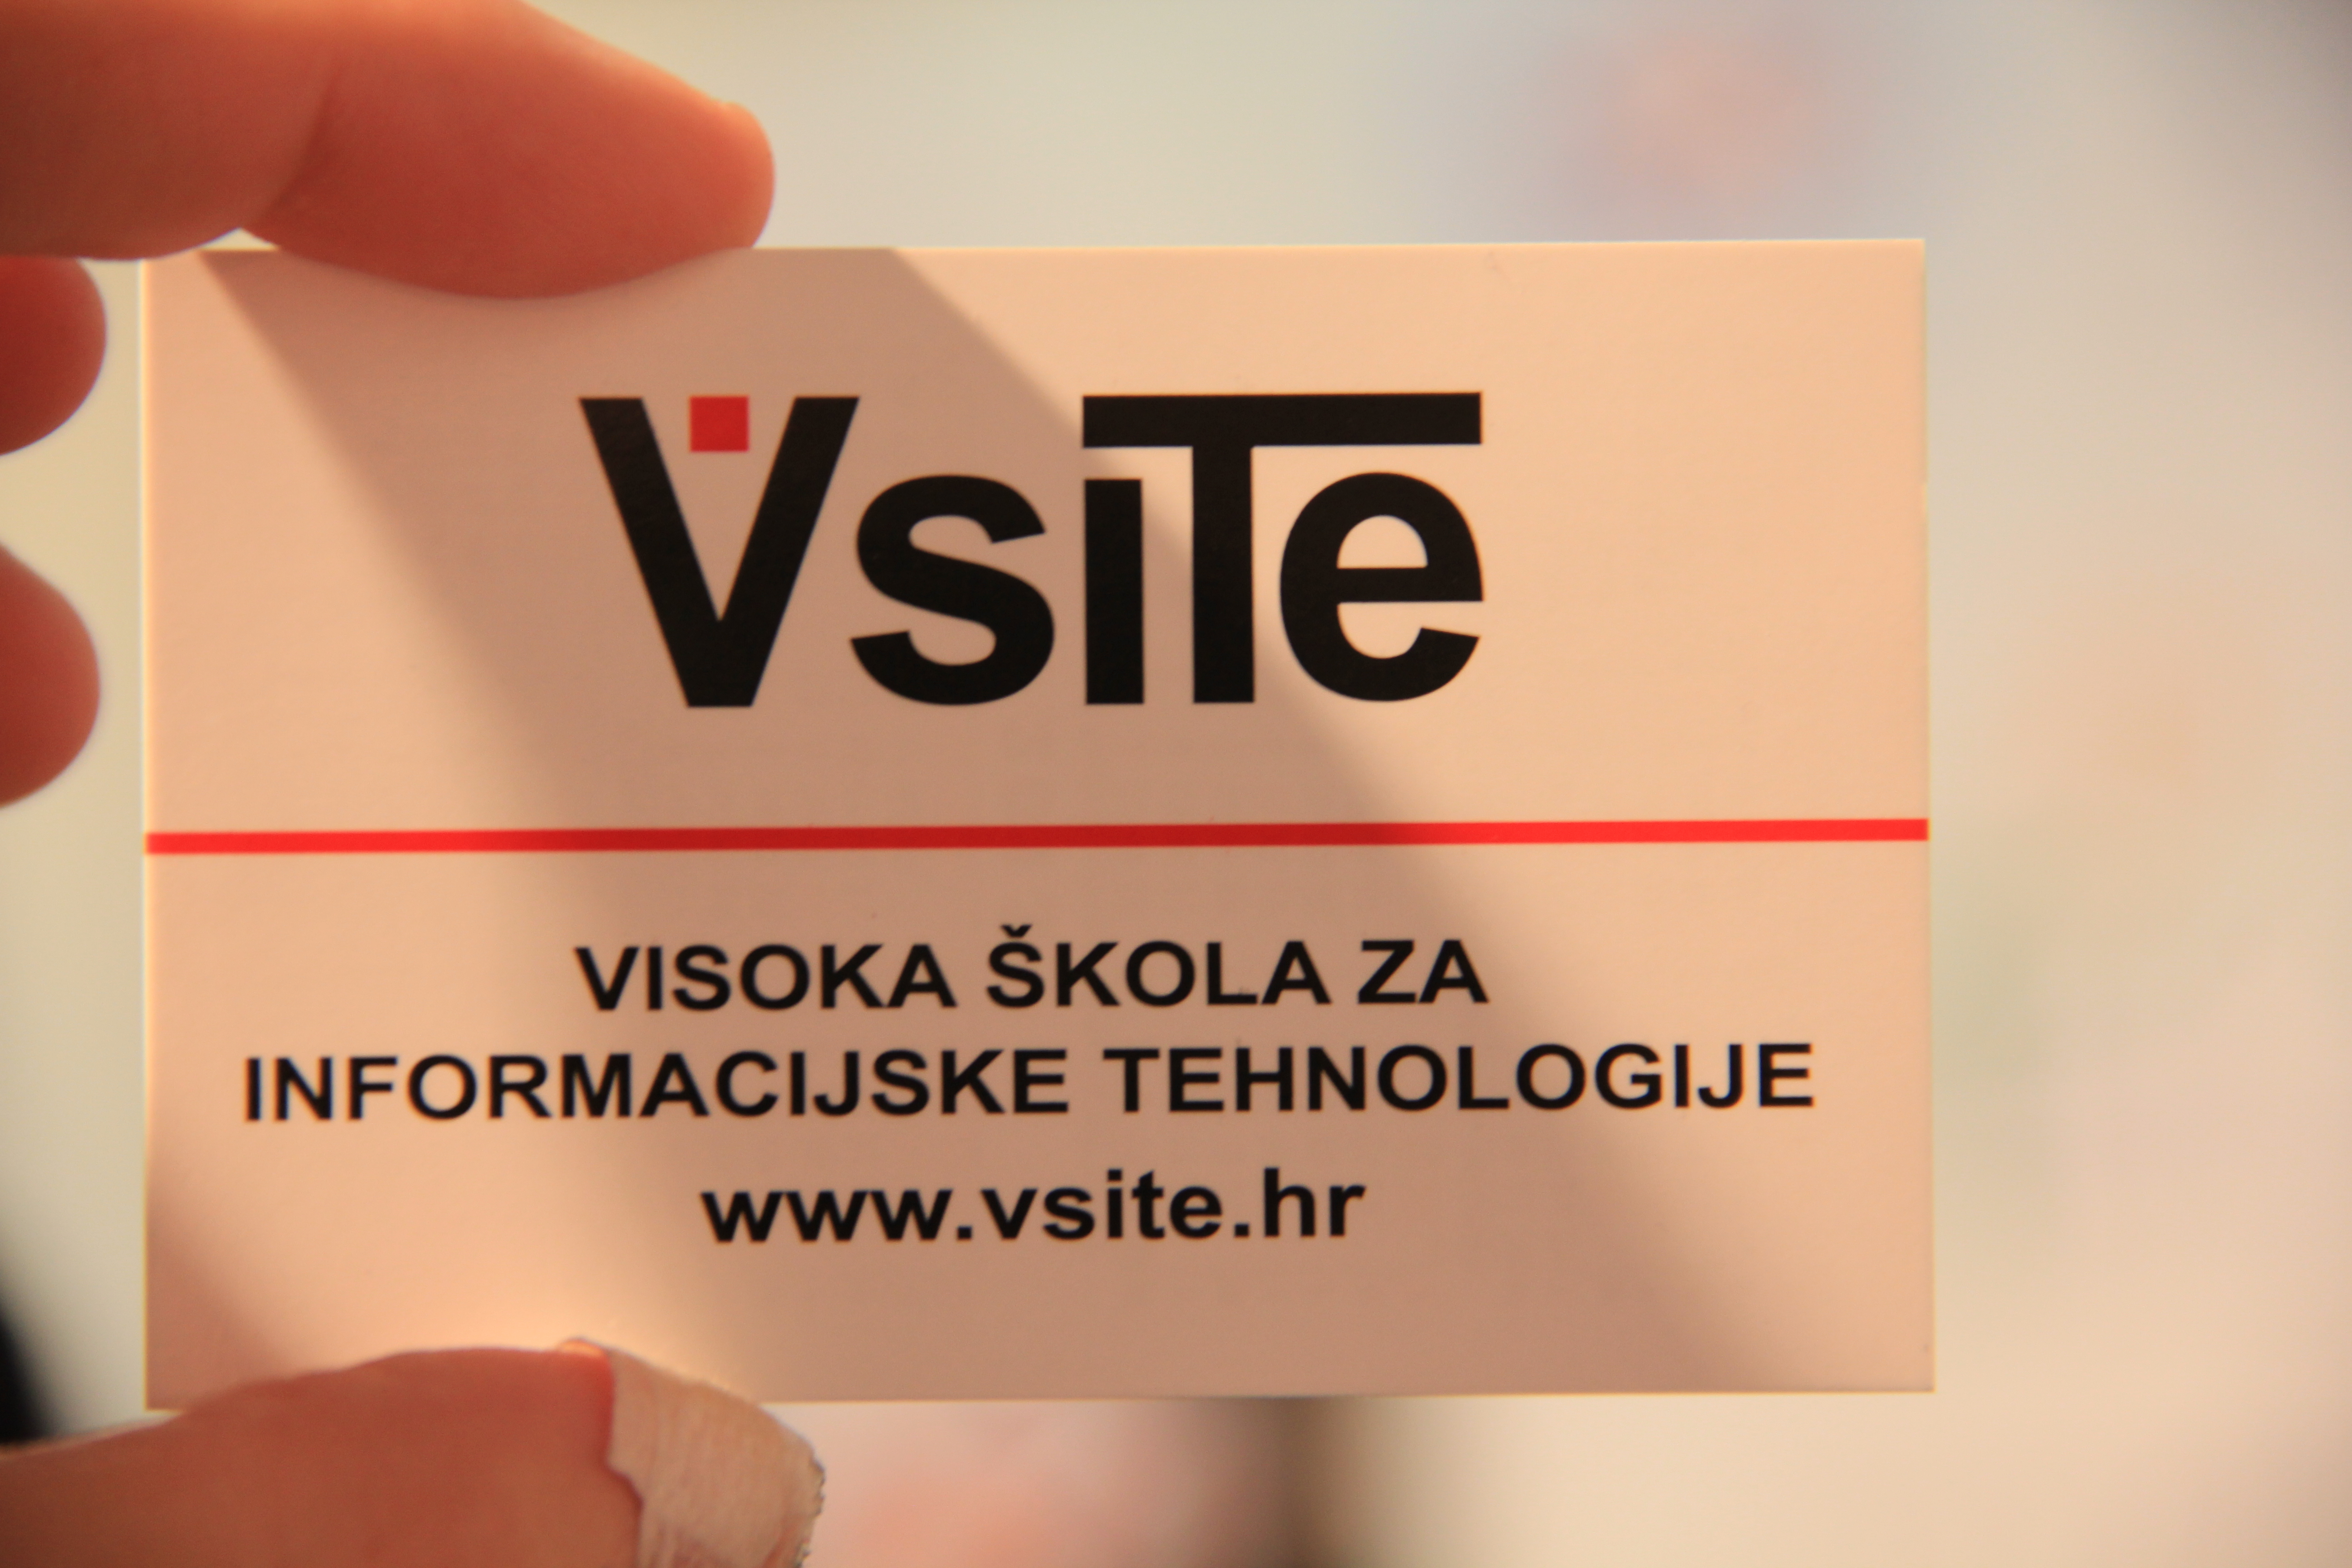 VSITE - Visoka škola za informacijske tehnologije